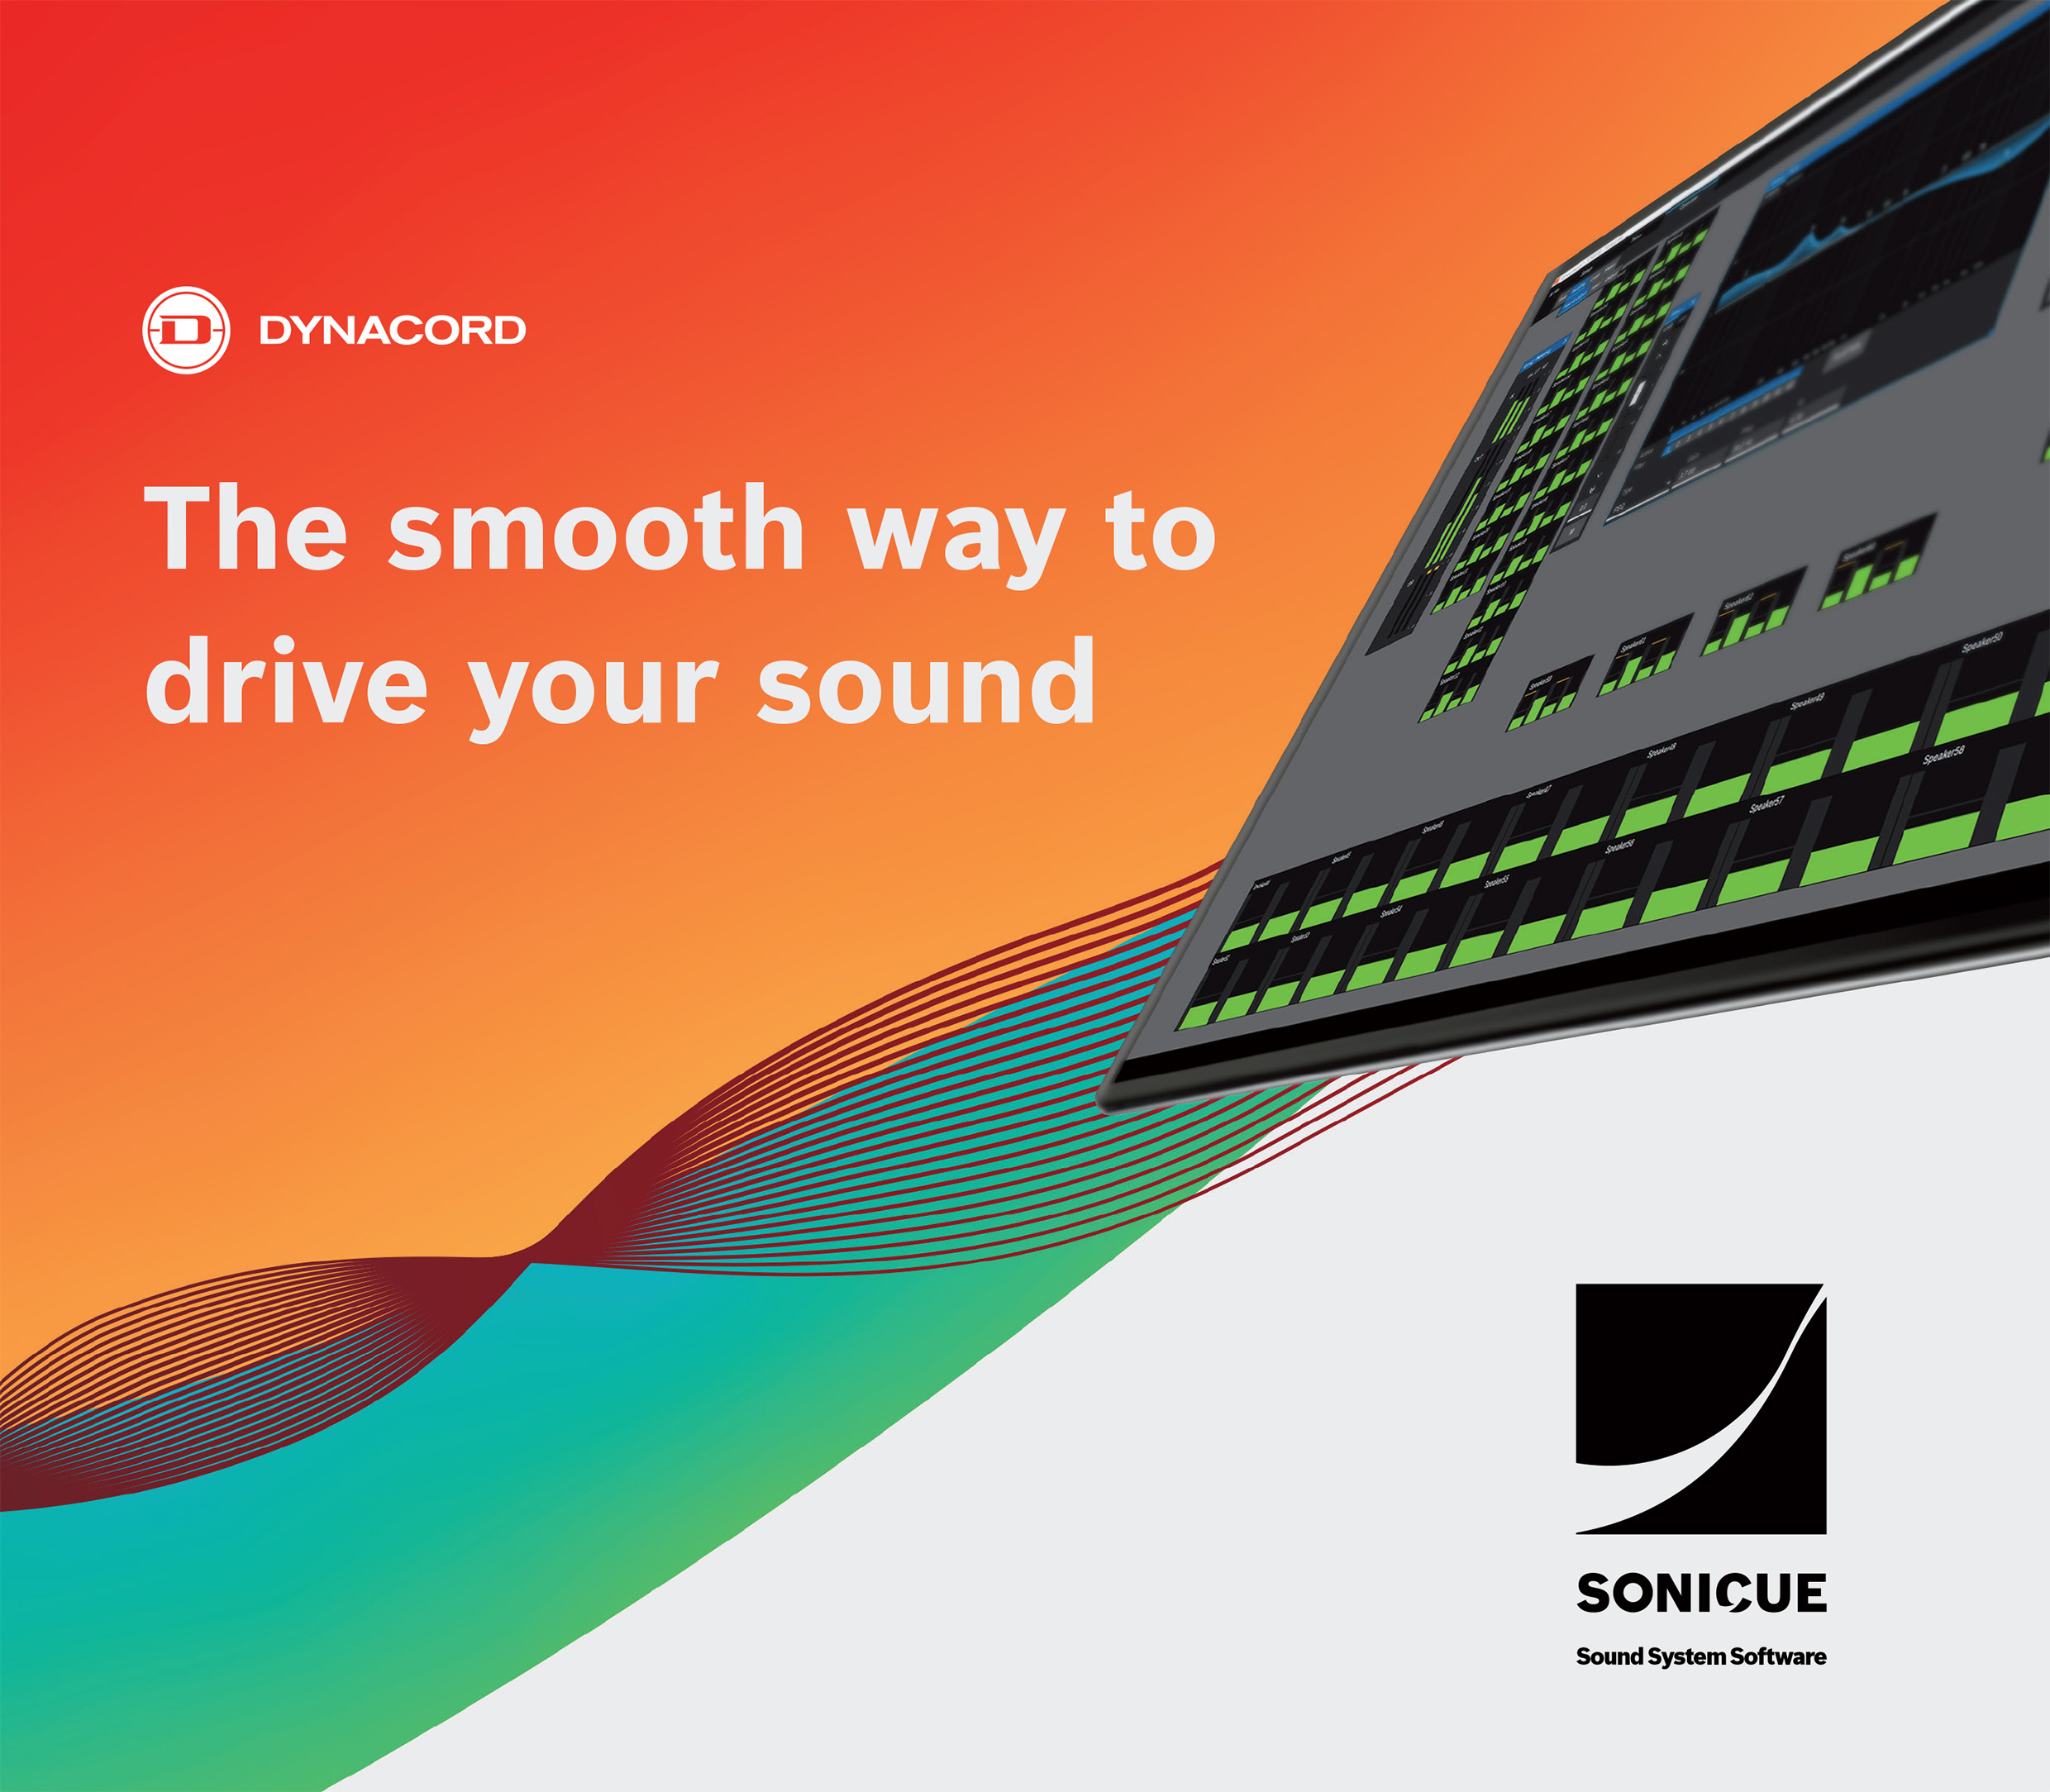 Phần mềm hệ thống âm thanh SONICUE từ Dynacord: Tạo nên âm thanh xuất sắc trong mọi ứng dụng